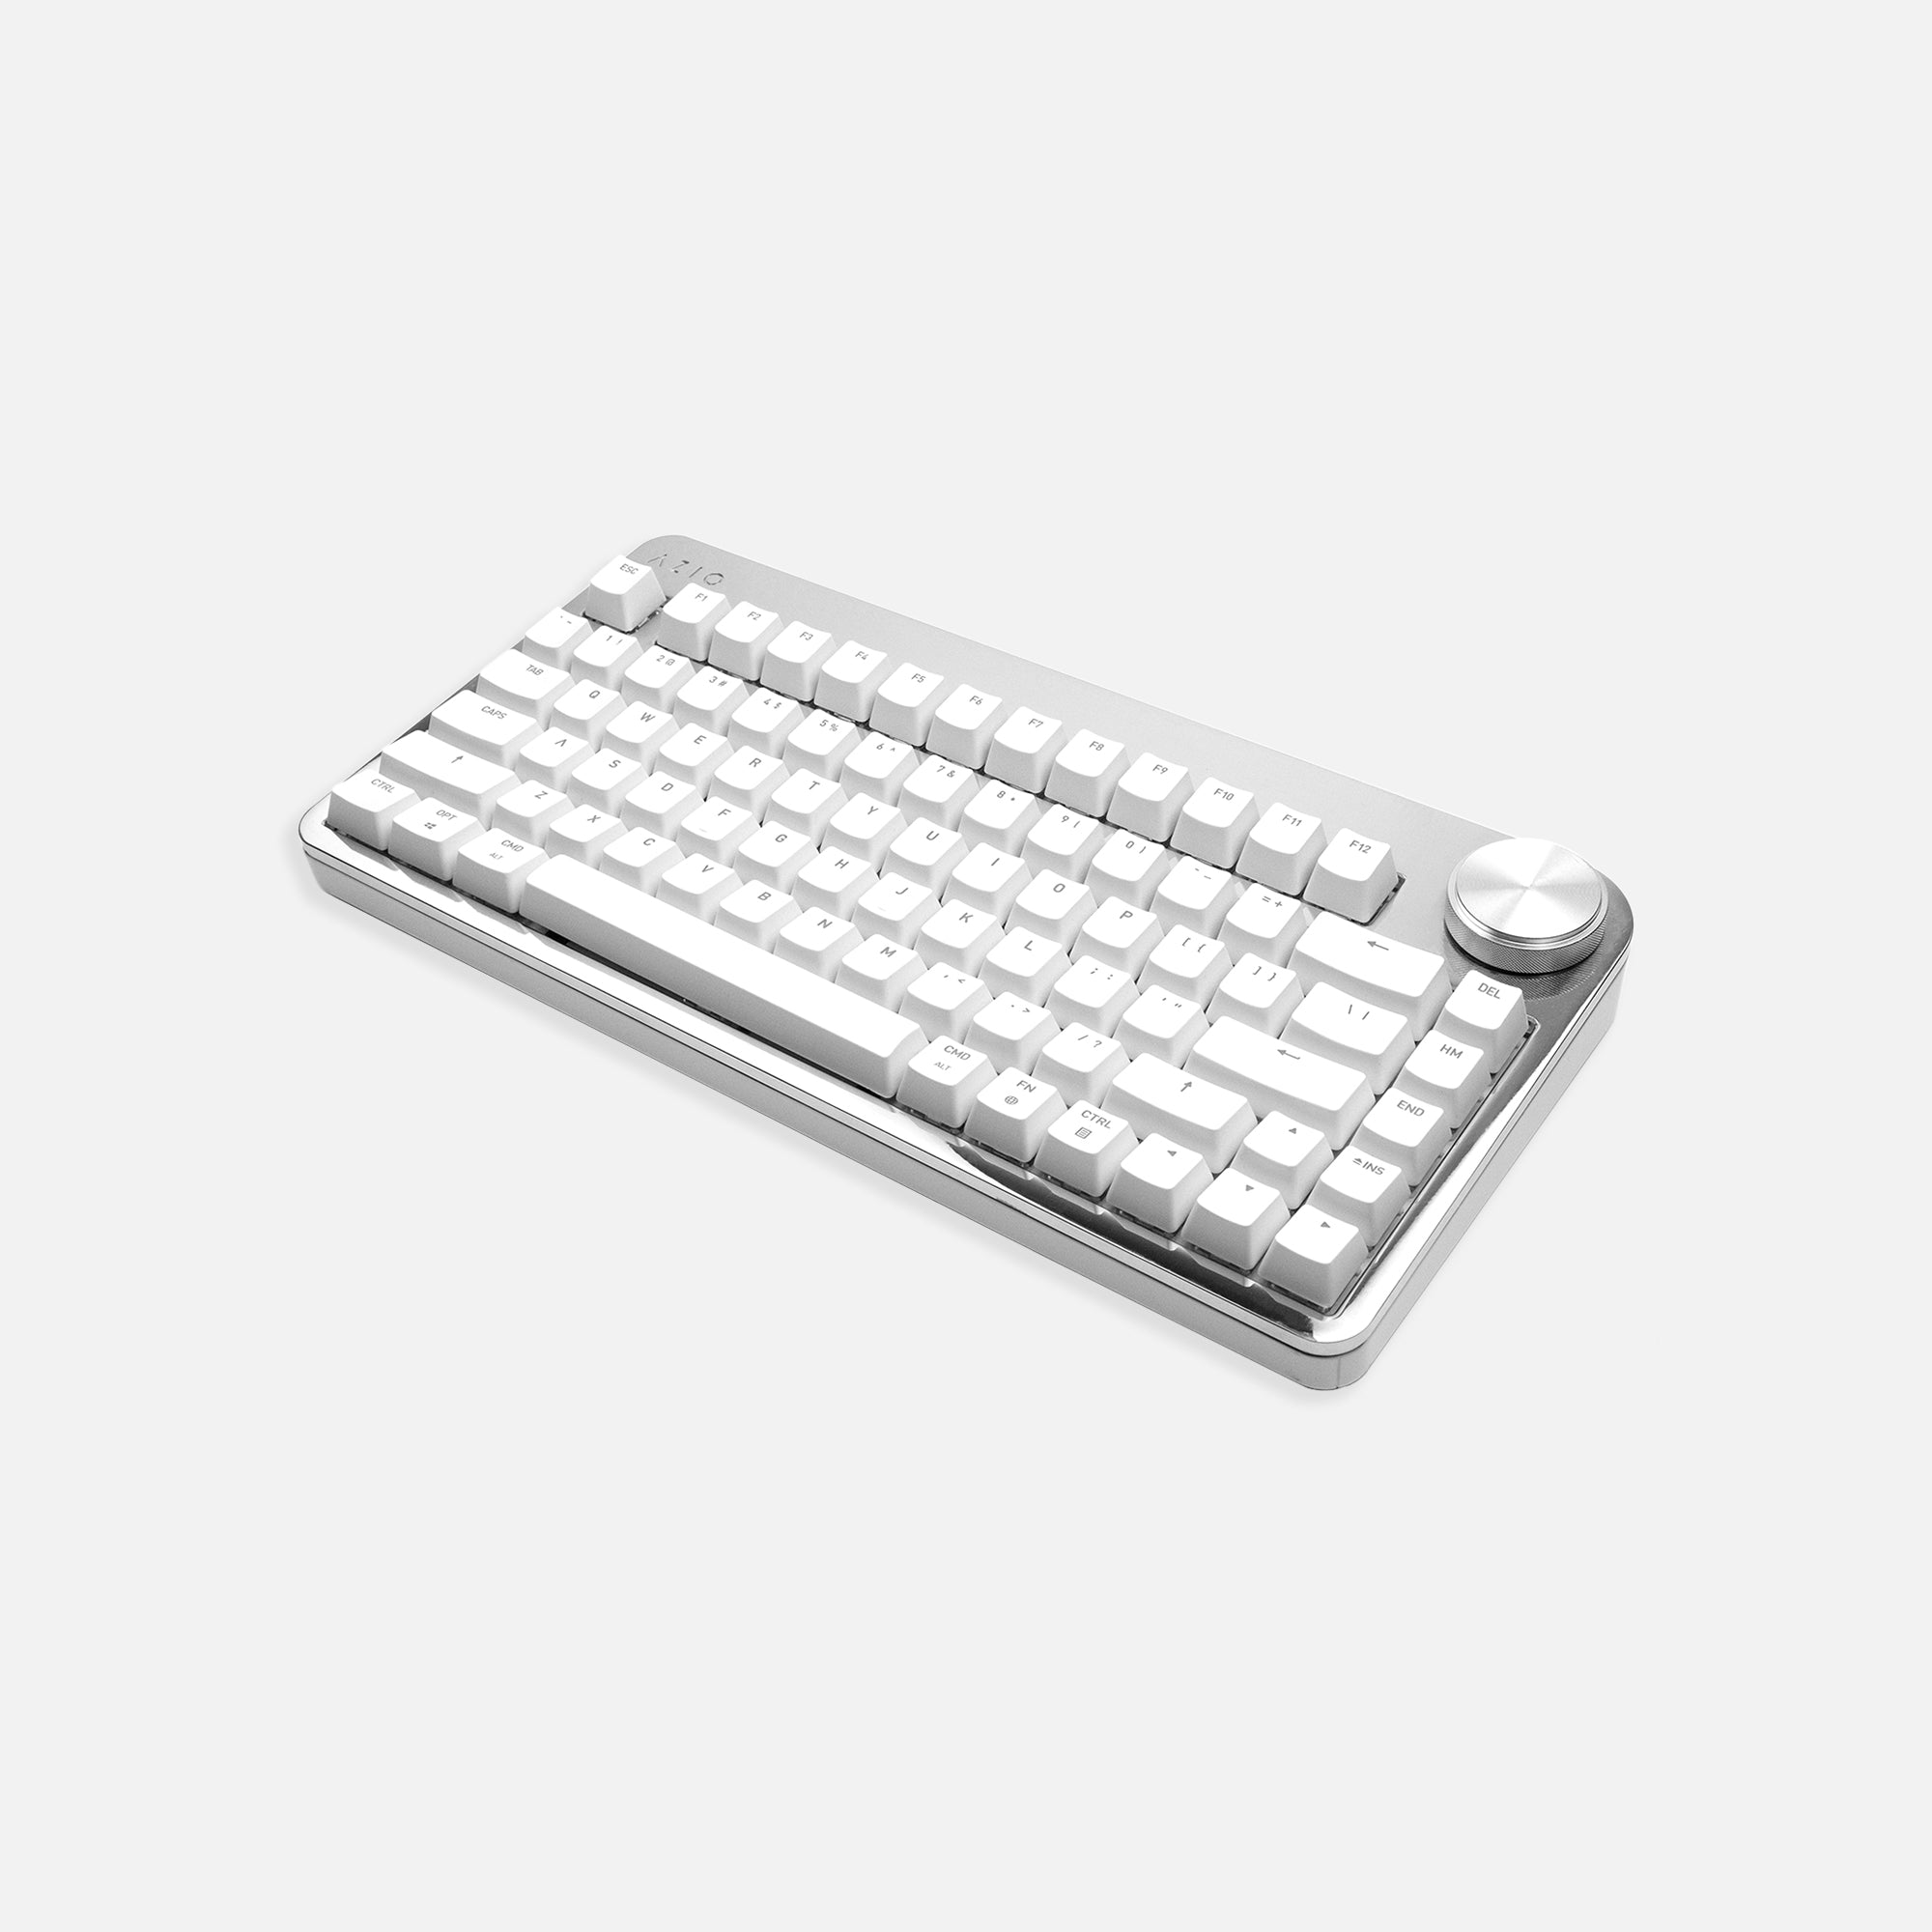 Tera75 draadloos toetsenbord